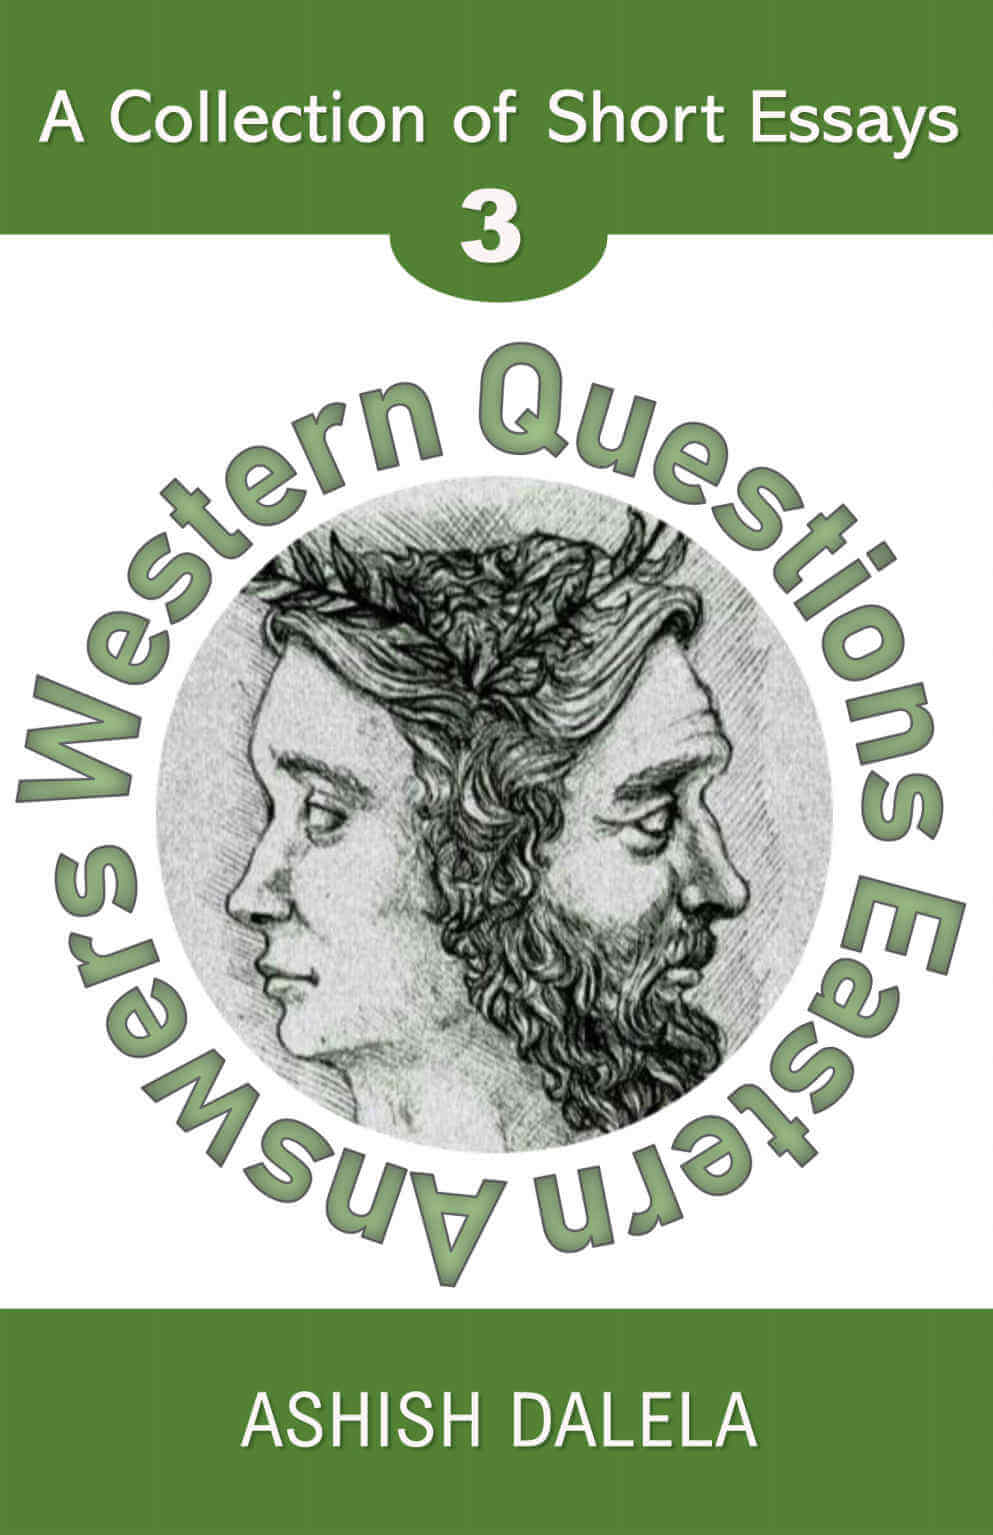 Domande occidentali Risposte orientali: una raccolta di saggi brevi - Volume 3